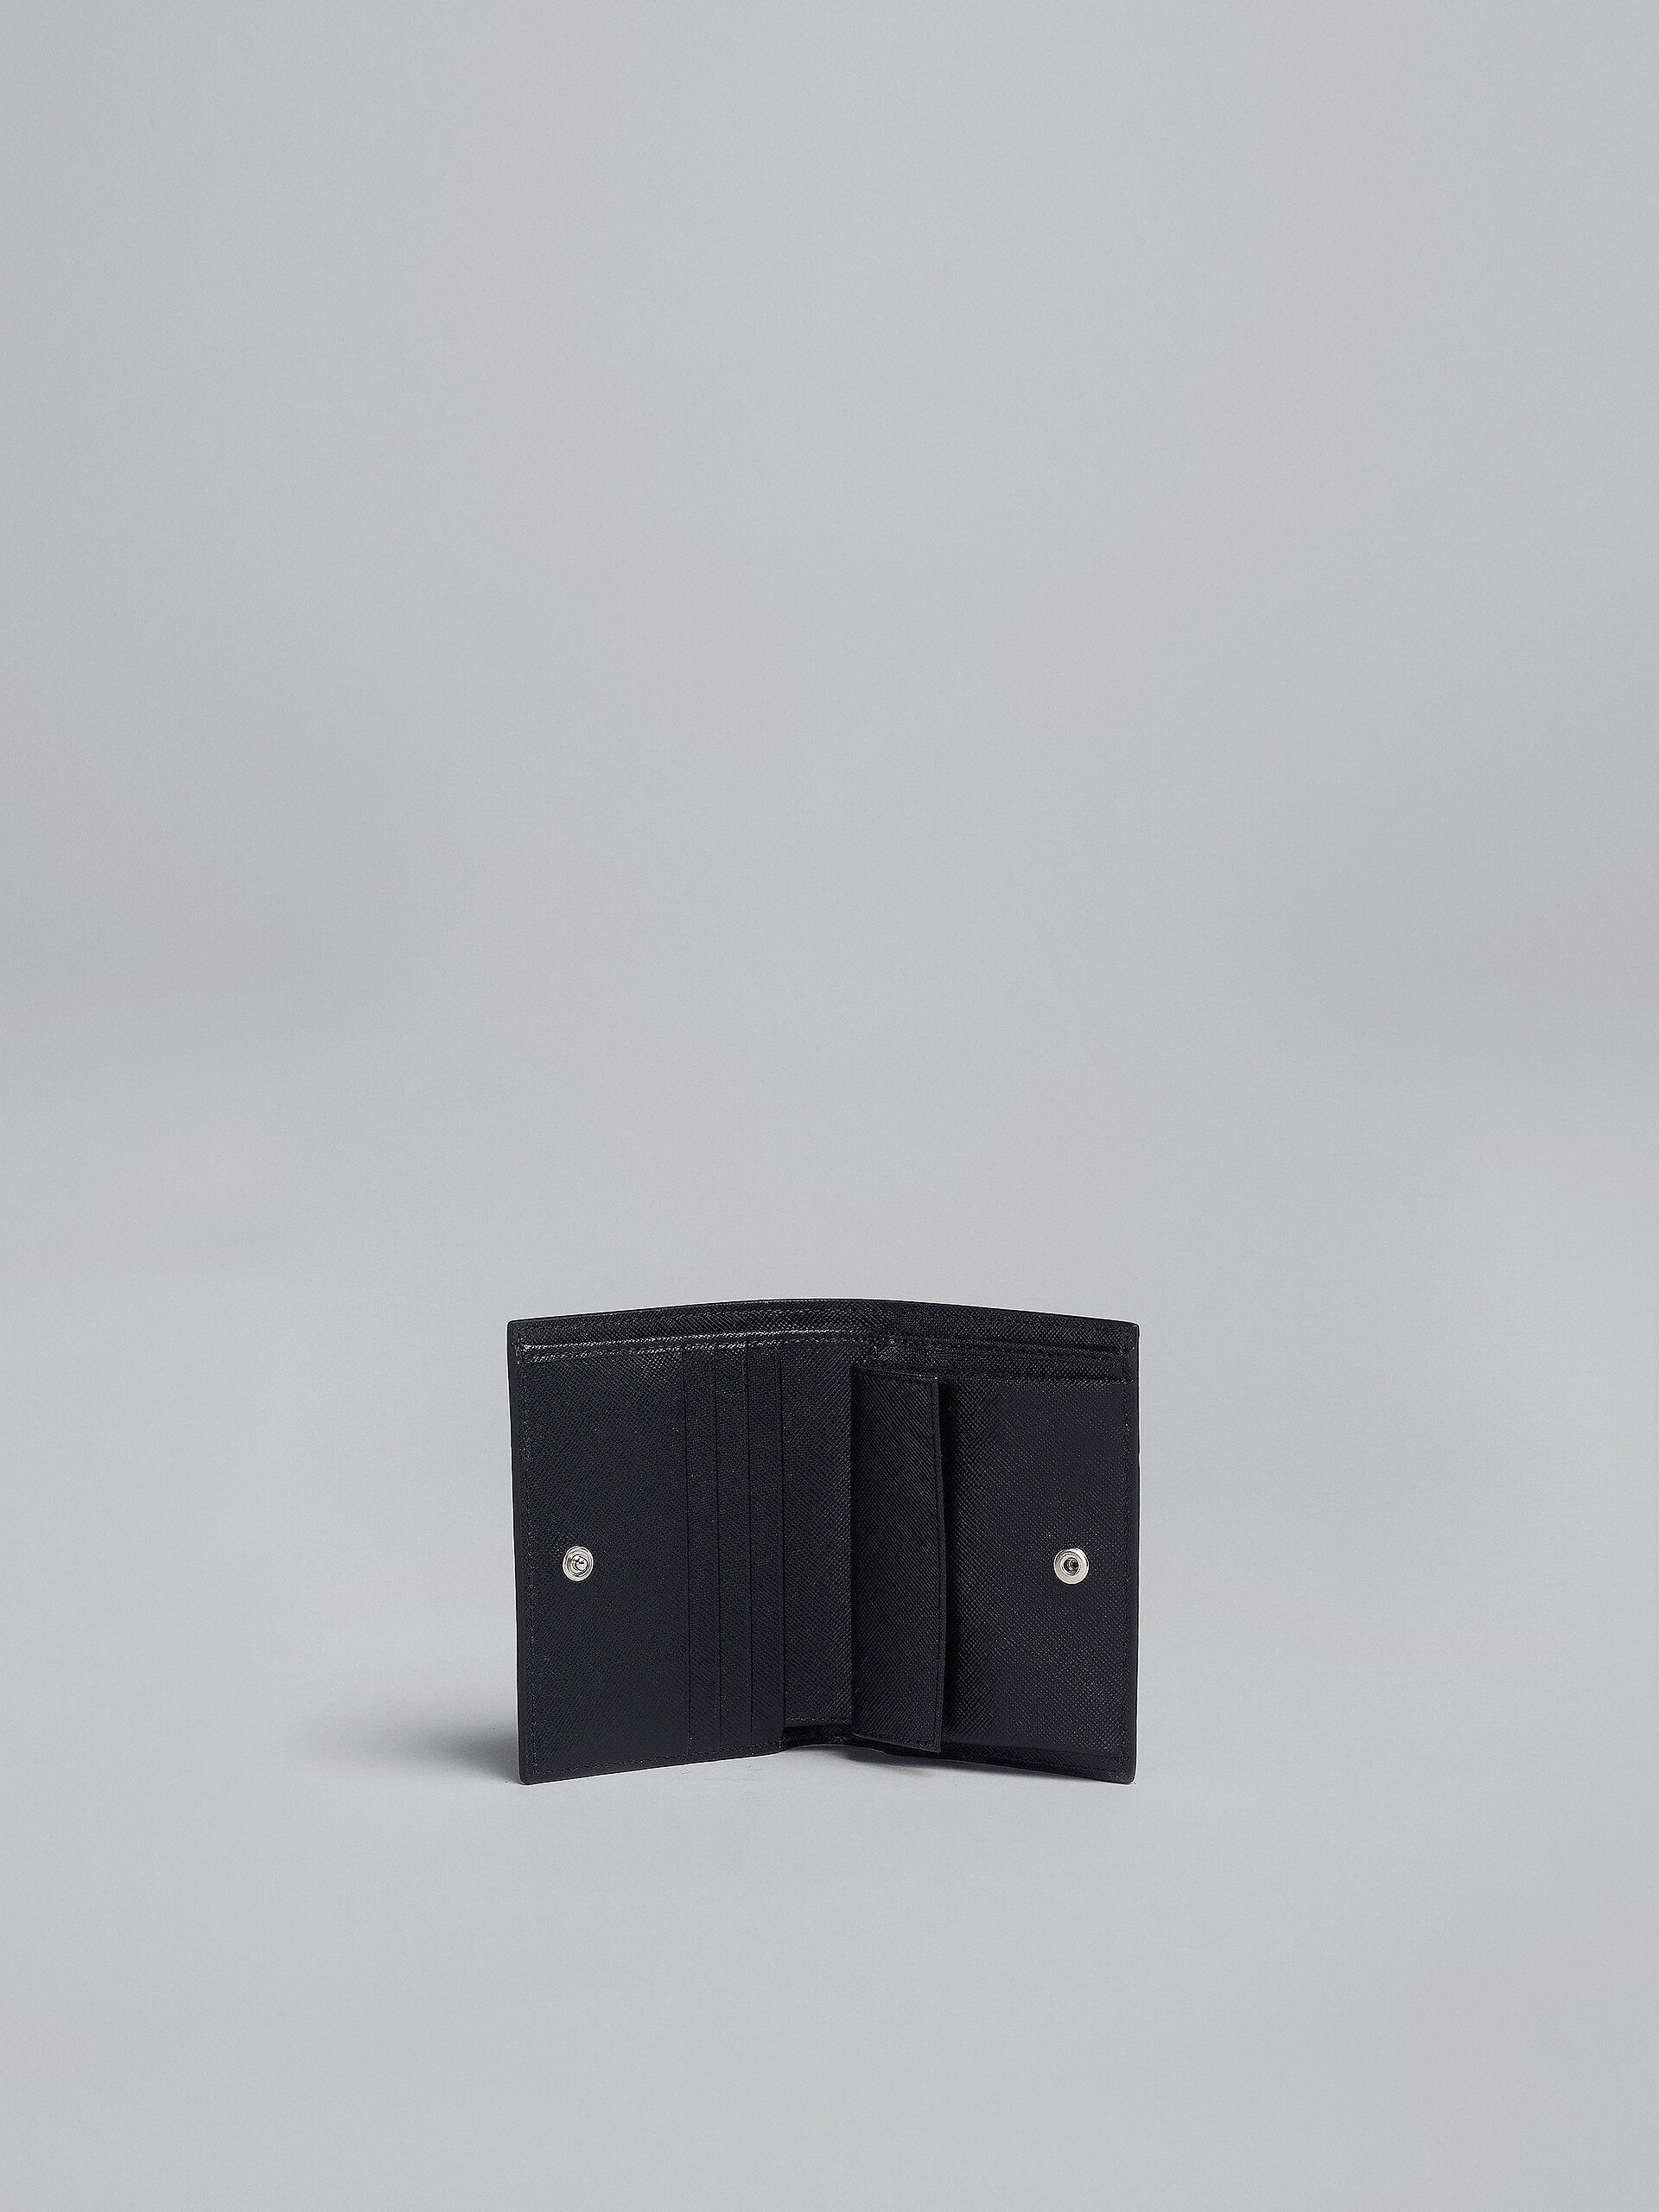 ブラック サフィアーノレザー製 二つ折りウォレット - 財布 - Image 2